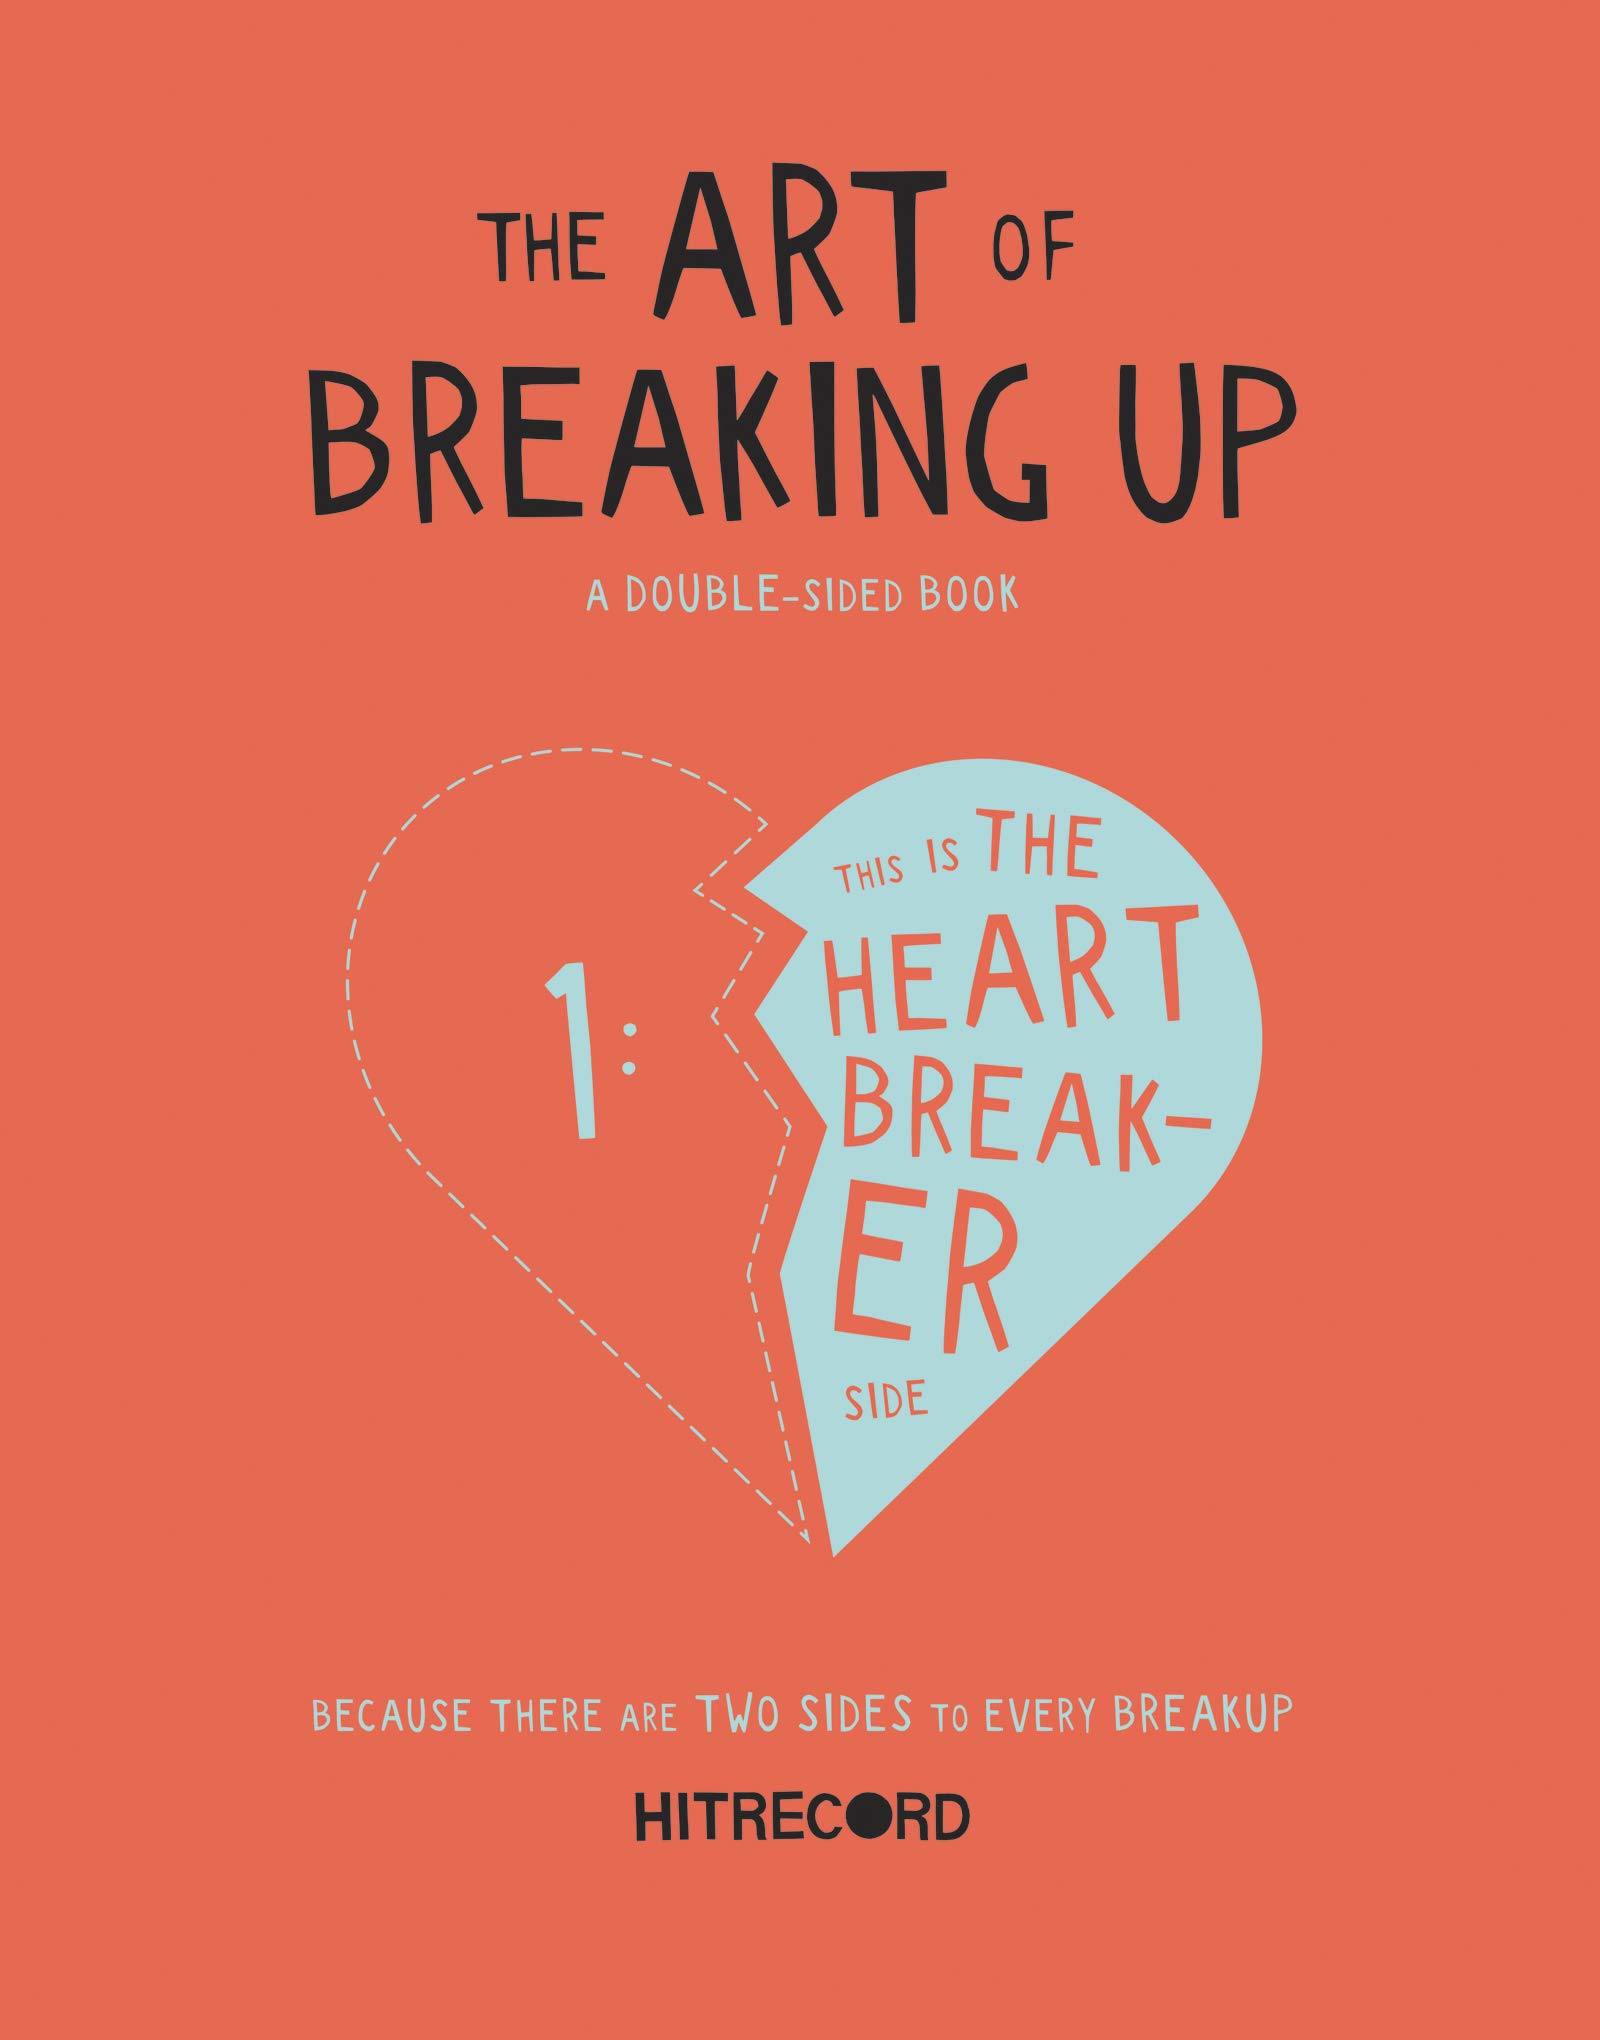 breaking up là gì